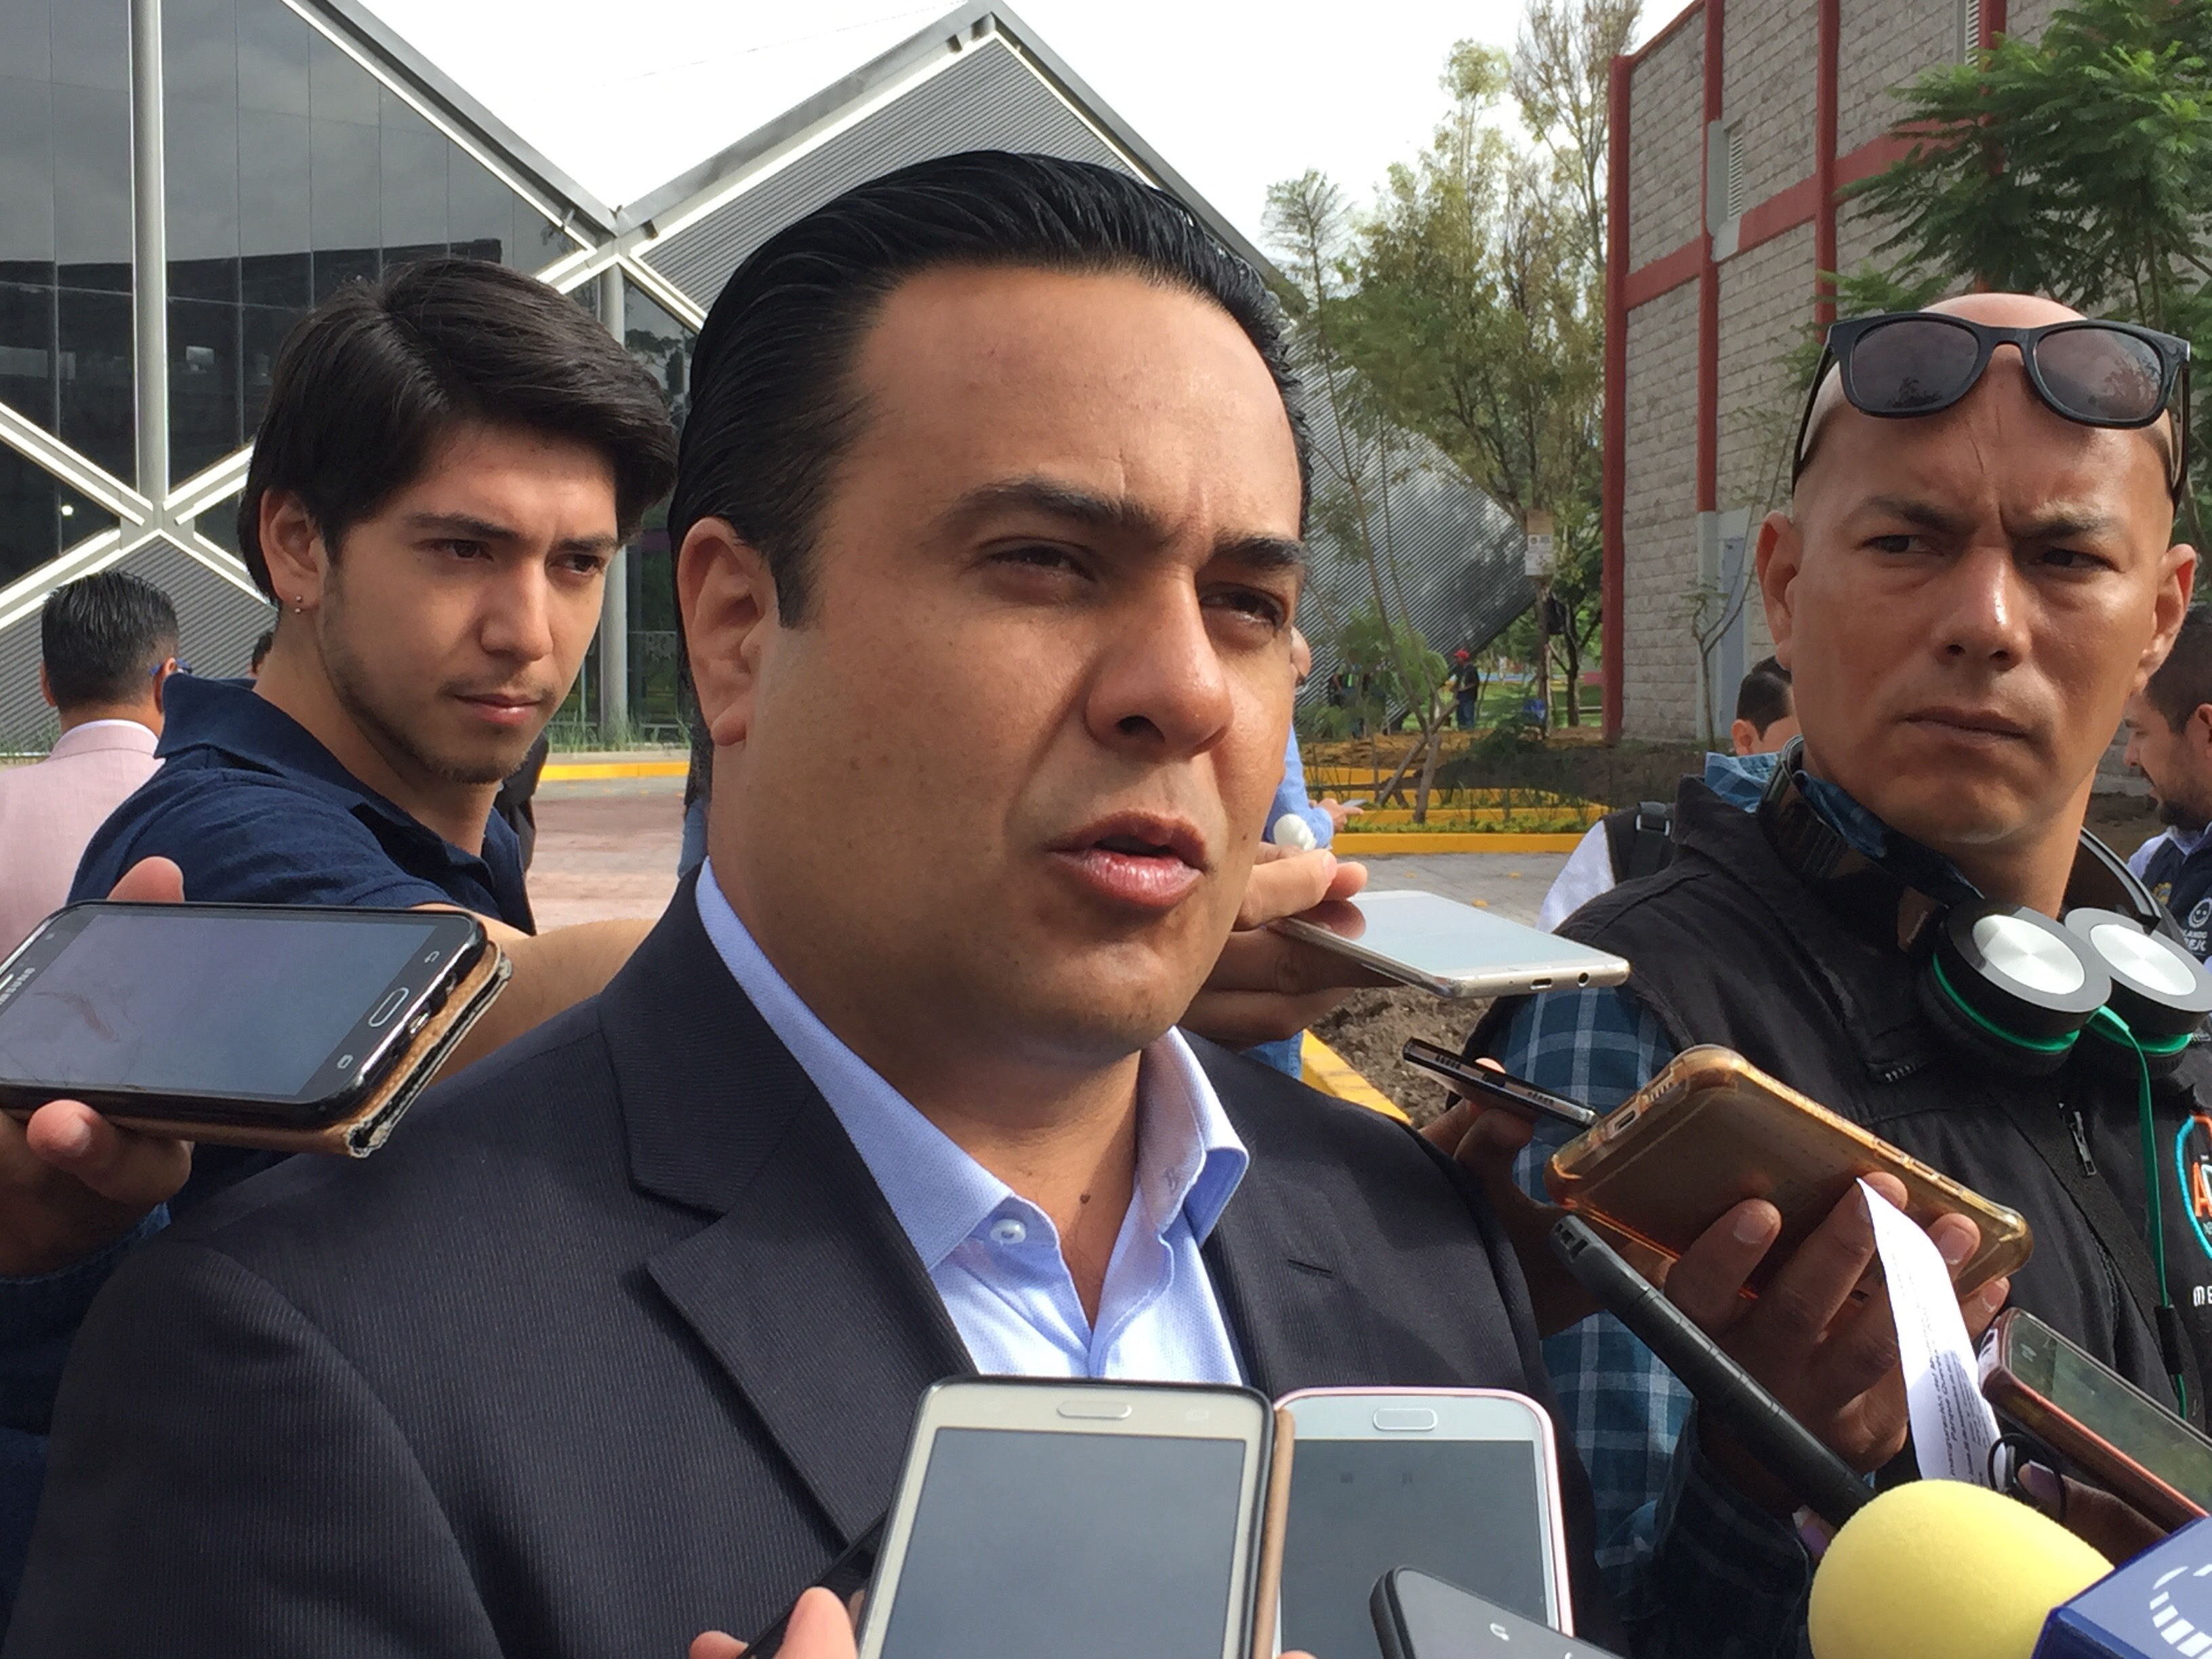  45 unidades nuevas de transporte público llegarán esta semana a Querétaro